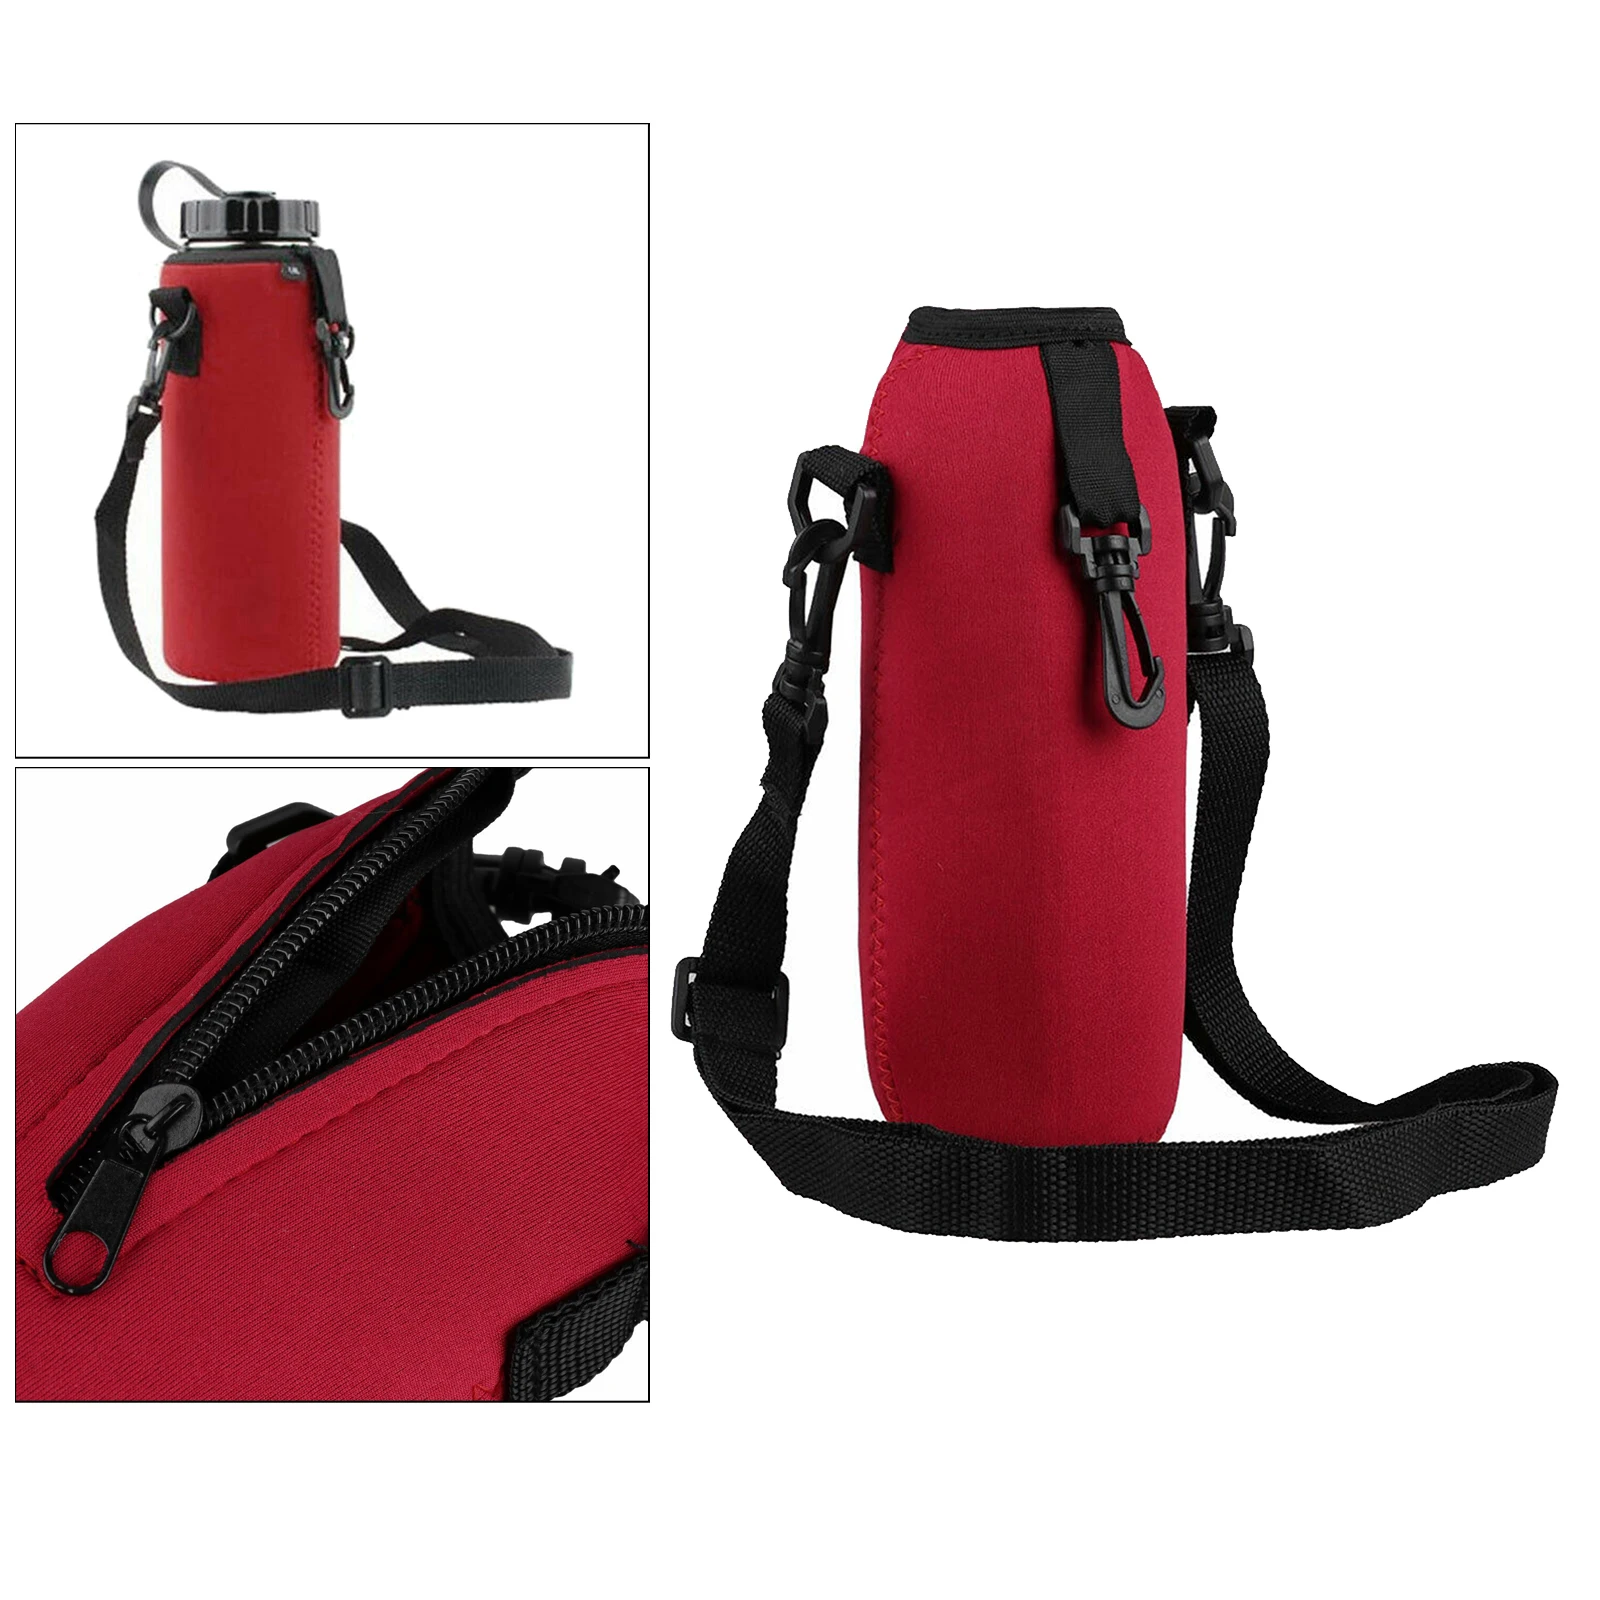 750ML Neoprene Water Bottle Carrier Insulated Cover Bag Holder Adjustable Strap